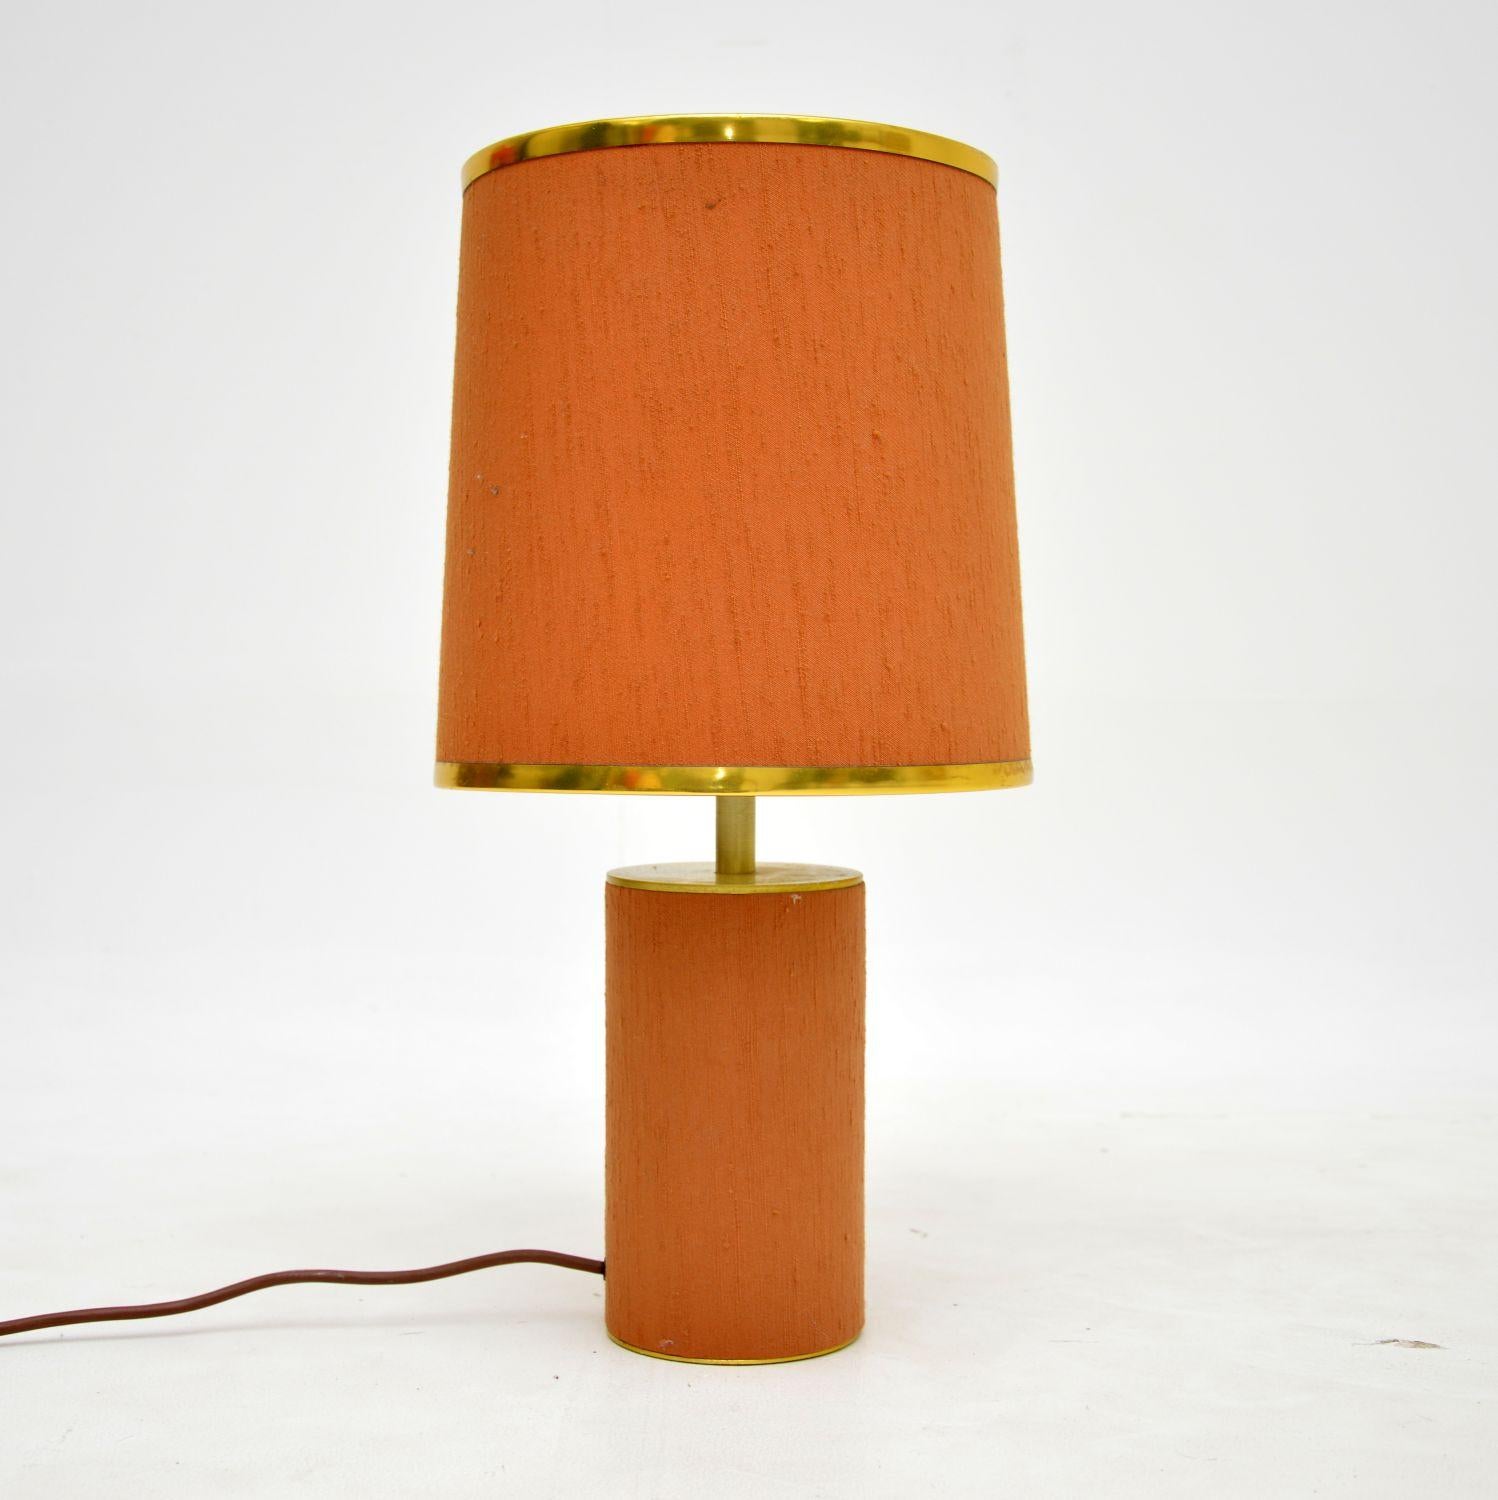 Eine schöne Vintage-Tischlampe aus Messing, umhüllt von pfirsichfarbenem Stoff. Es wurde in England hergestellt und stammt aus den 1970er Jahren.

Es ist von hervorragender Qualität und hat ein recht ungewöhnliches Design. Er hat eine schöne Größe